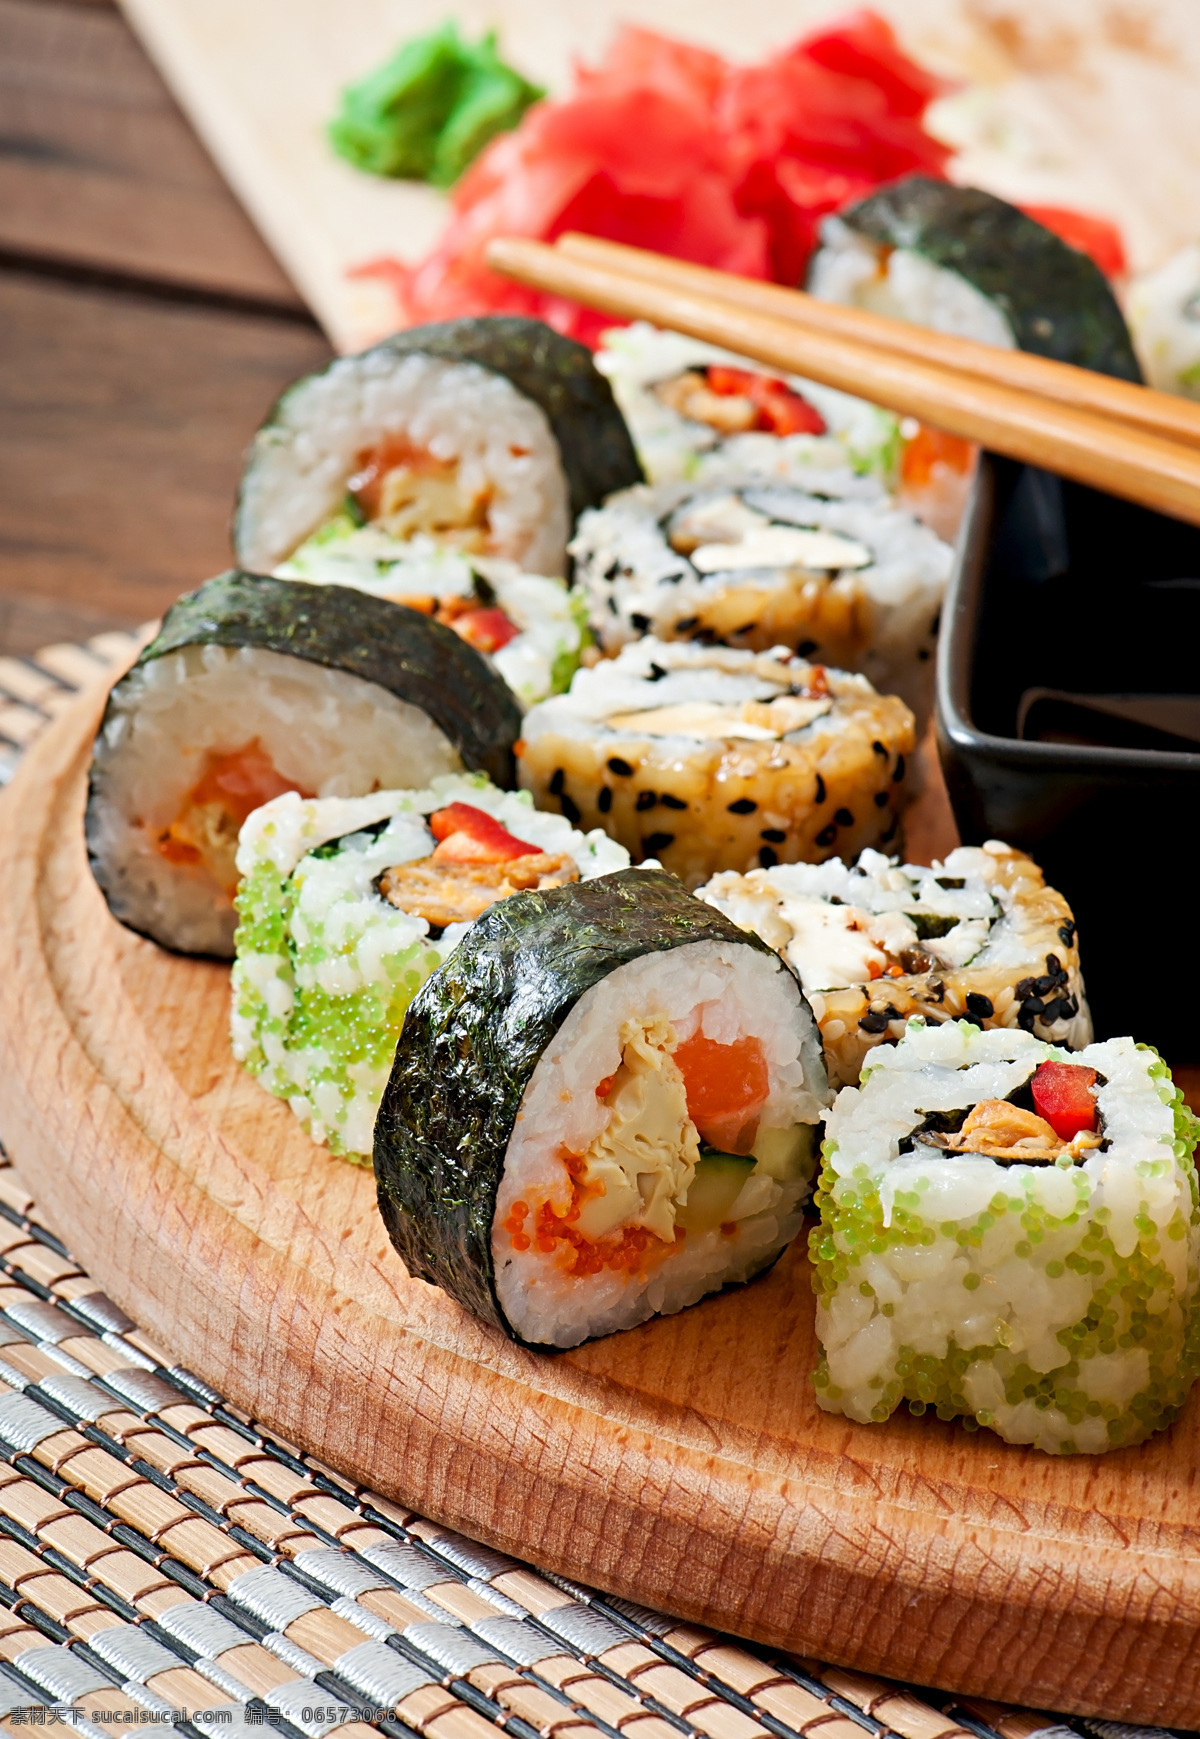 日本 寿司 蔬菜 紫菜 日本寿司 日本美食 食材原料 餐饮美食 外国美食